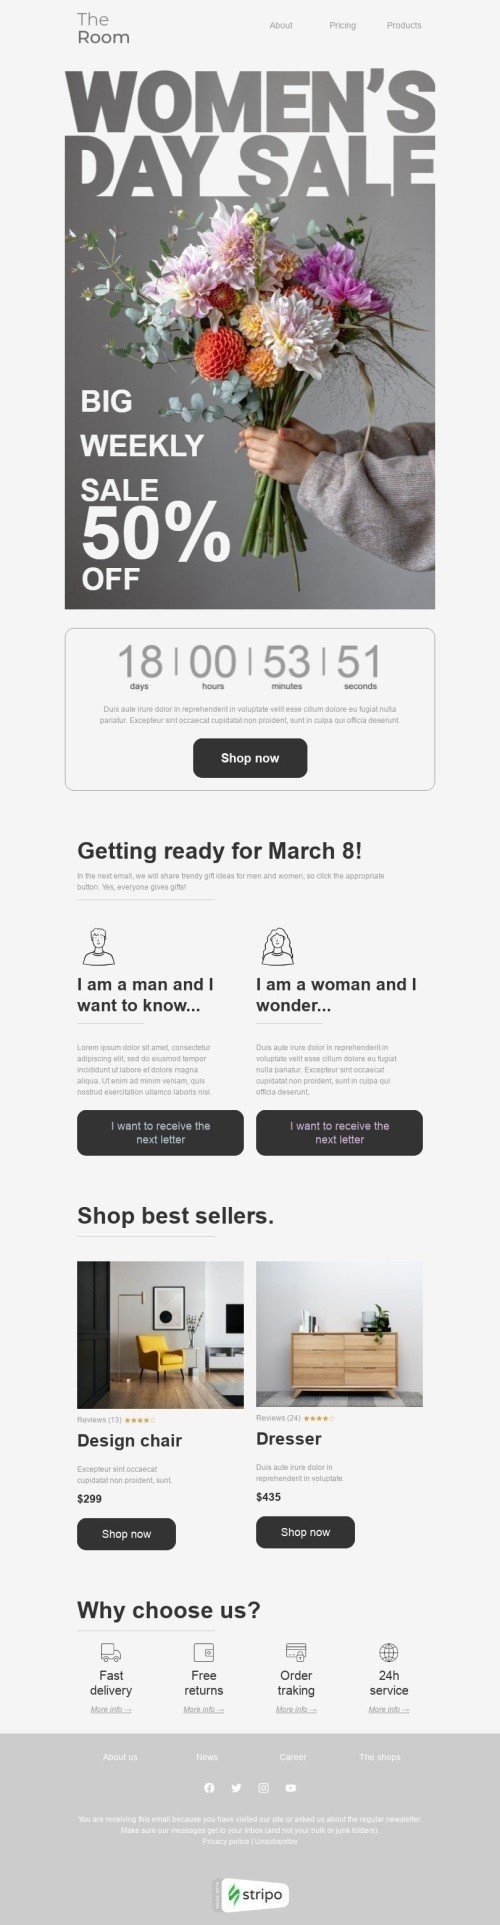 Modelo de E-mail de «Grande venda semanal» de Dia da Mulher para a indústria de Móveis, Decoração e DIY Visualização de dispositivo móvel